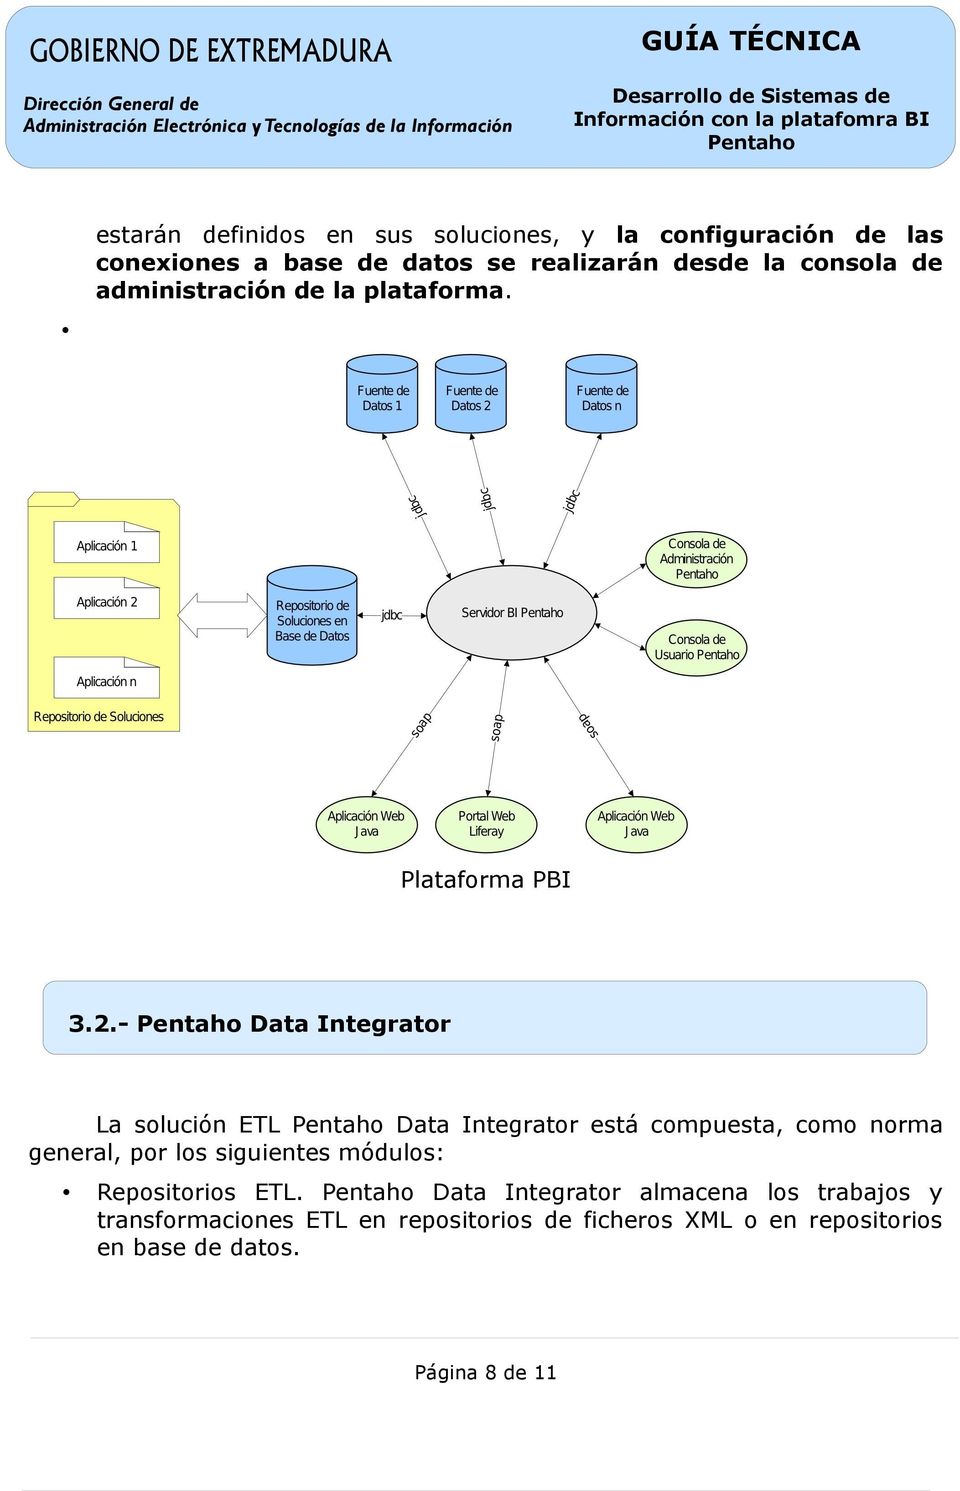 - Data Integrator La solución ETL Data Integrator está compuesta, como norma general, por los siguientes